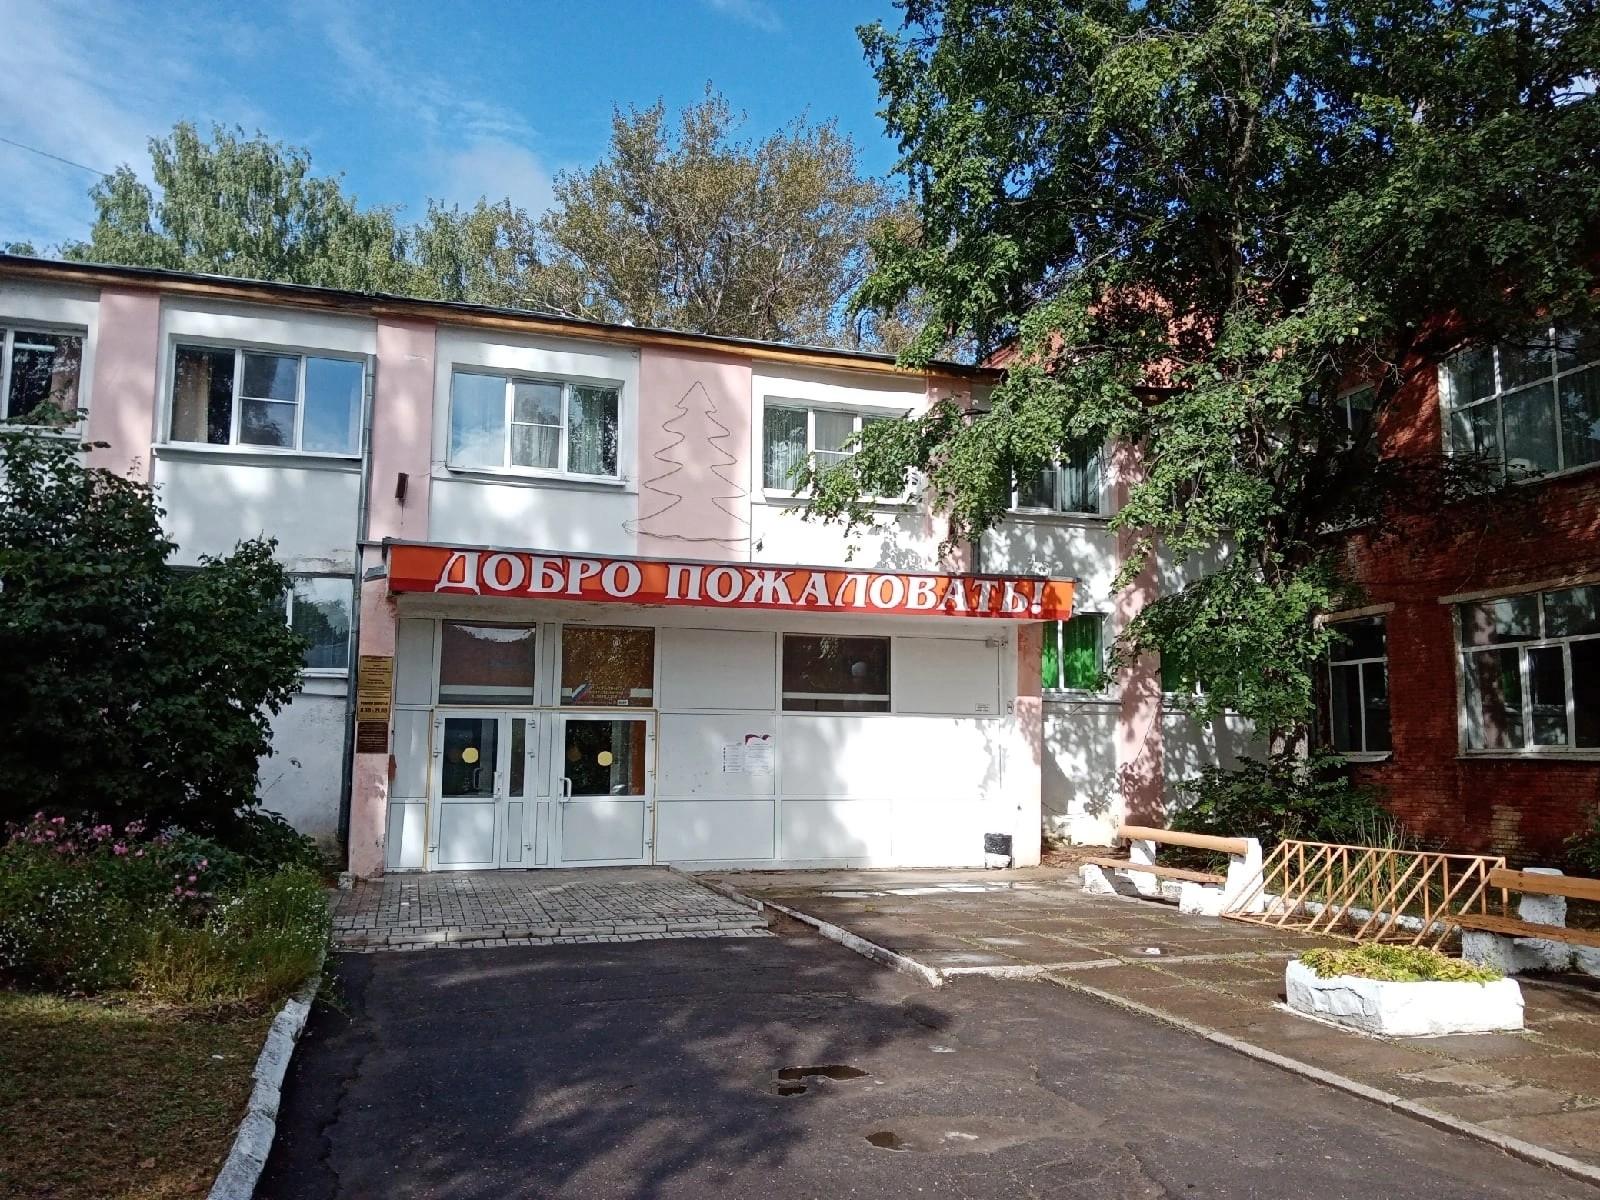 Центр народной культуры и художественных ремесел «Сокольский»